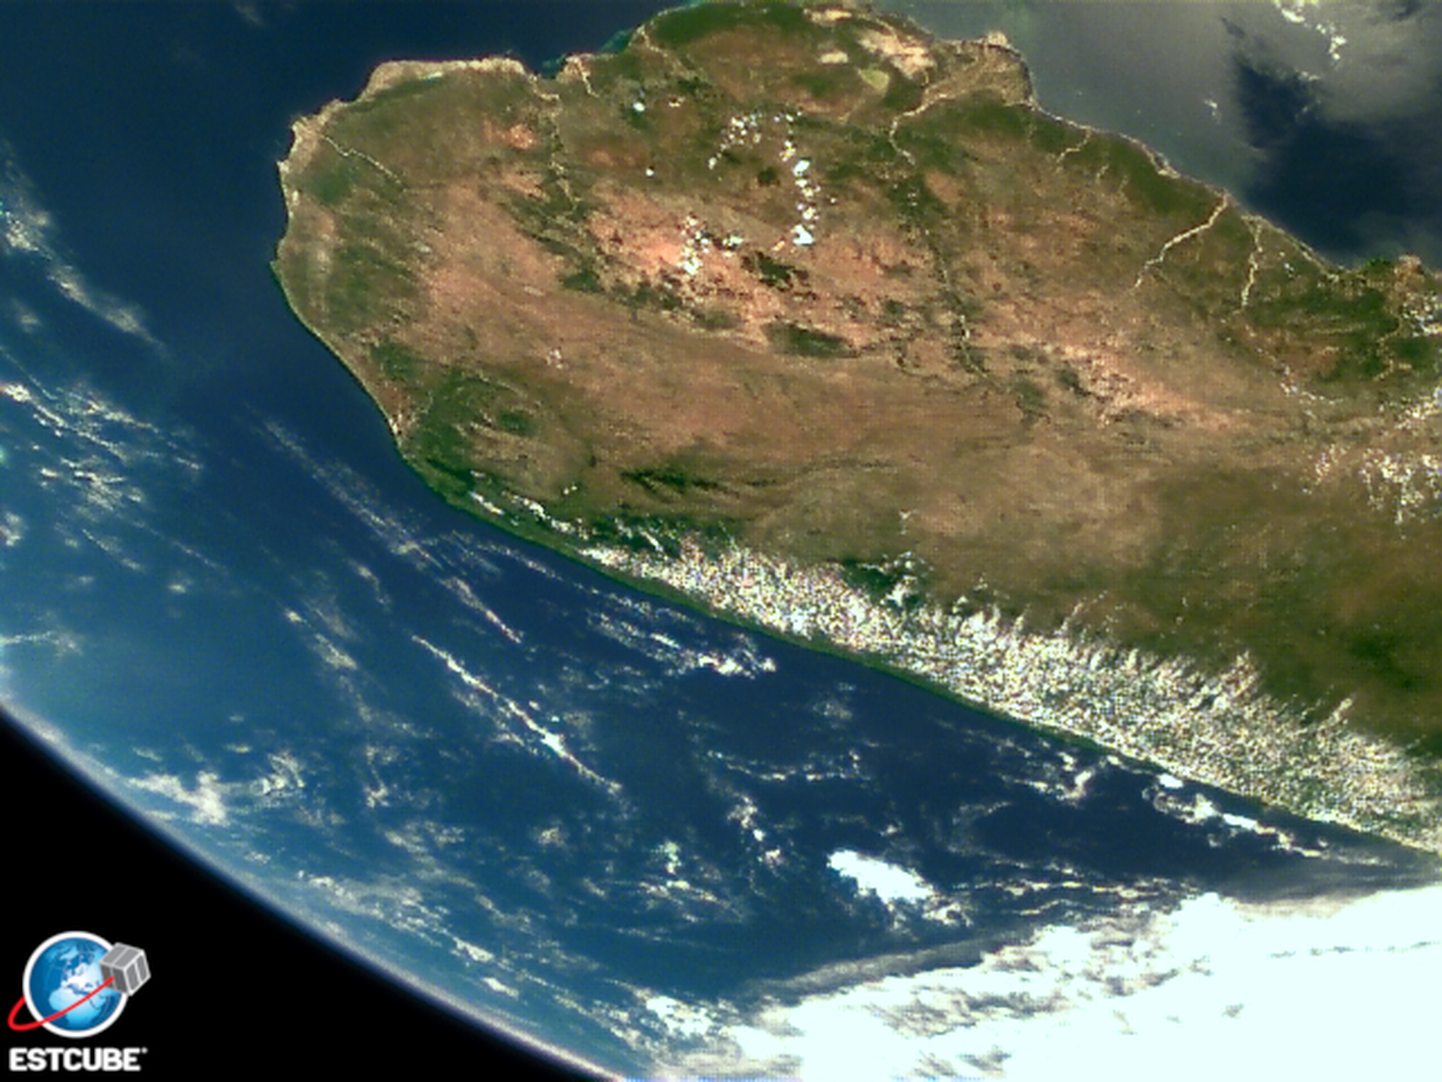 Estcube-1 tehtud foto Madagaskarist